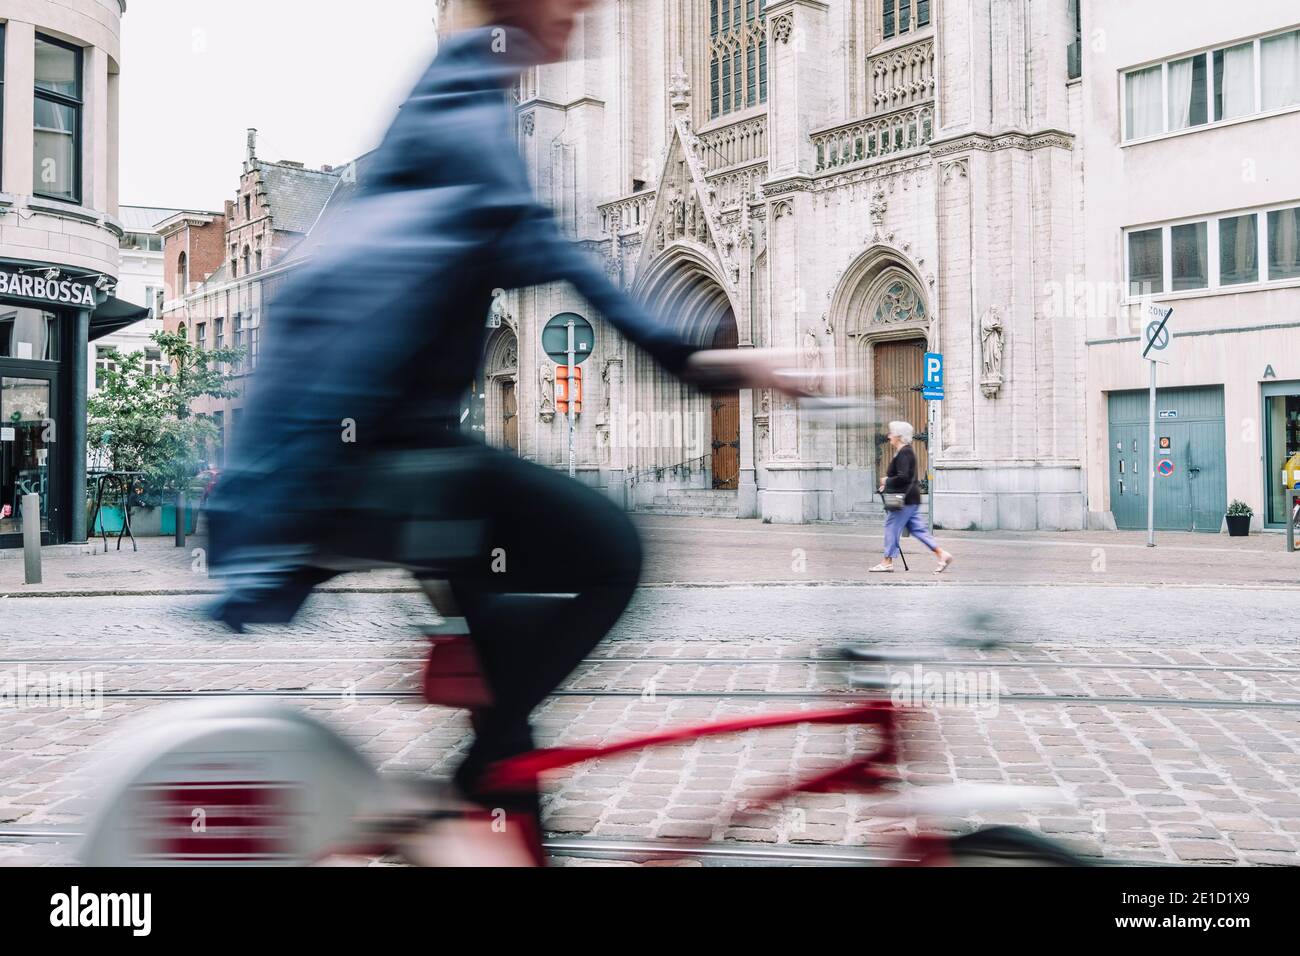 Persona in bicicletta a Bruges, Fiandre Occidentali, Belgio Foto Stock